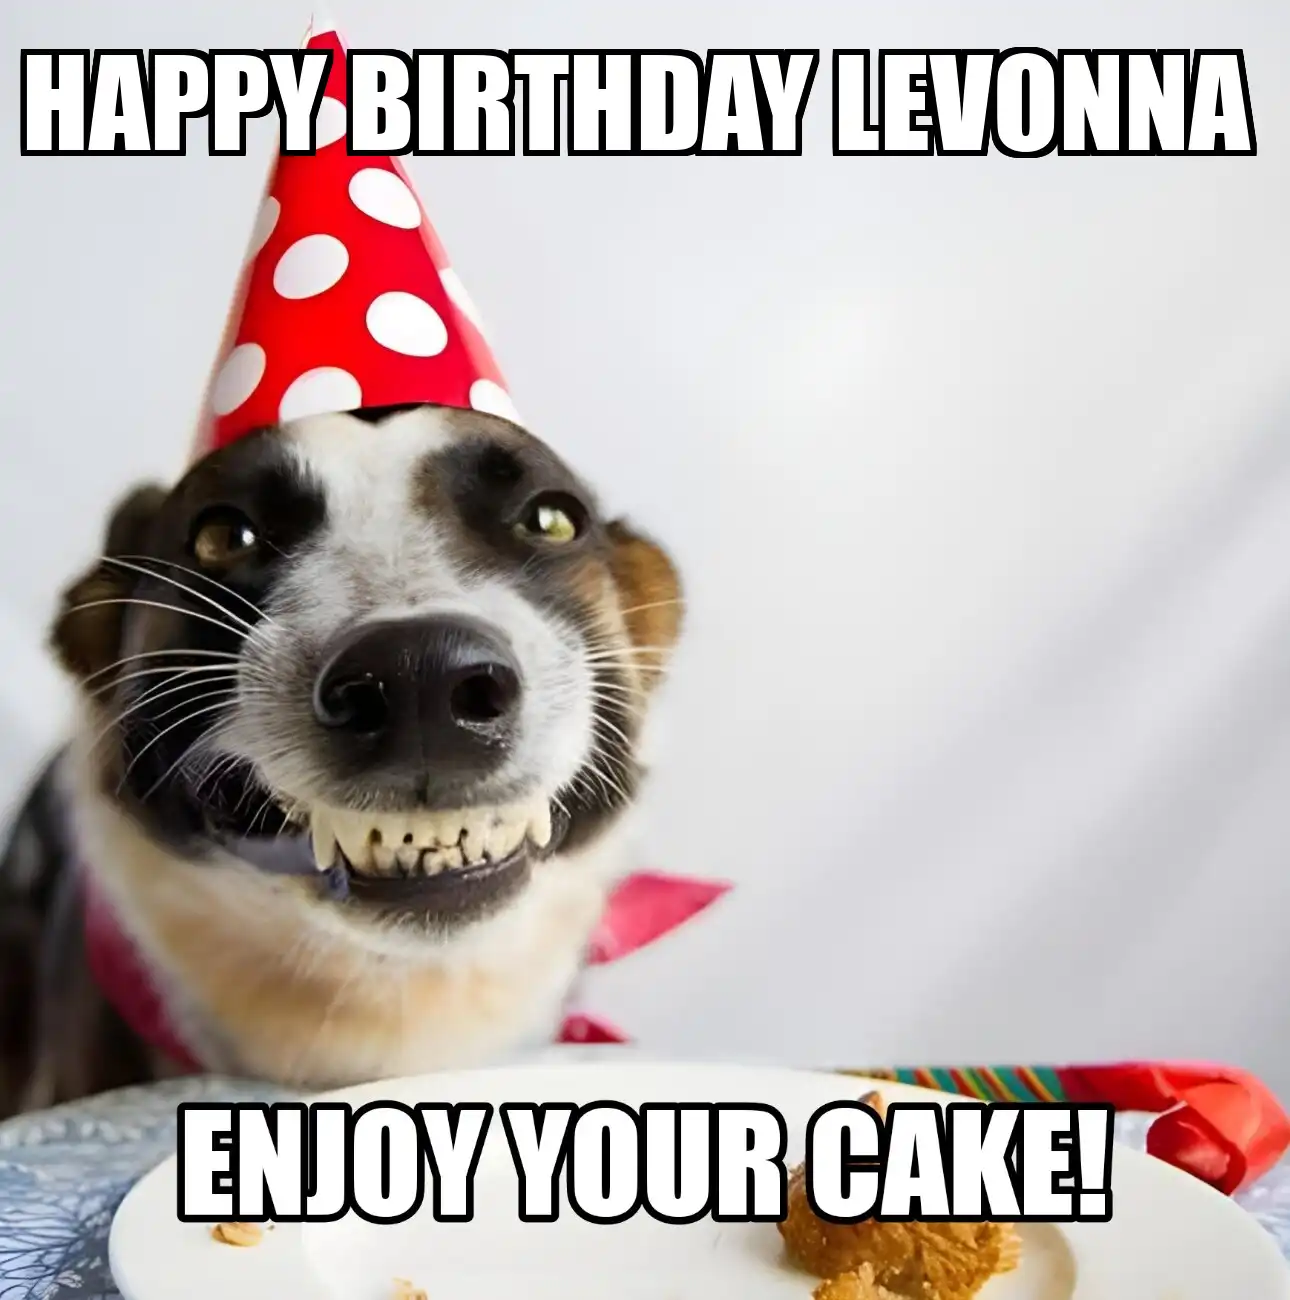 Happy Birthday Levonna Enjoy Your Cake Dog Meme